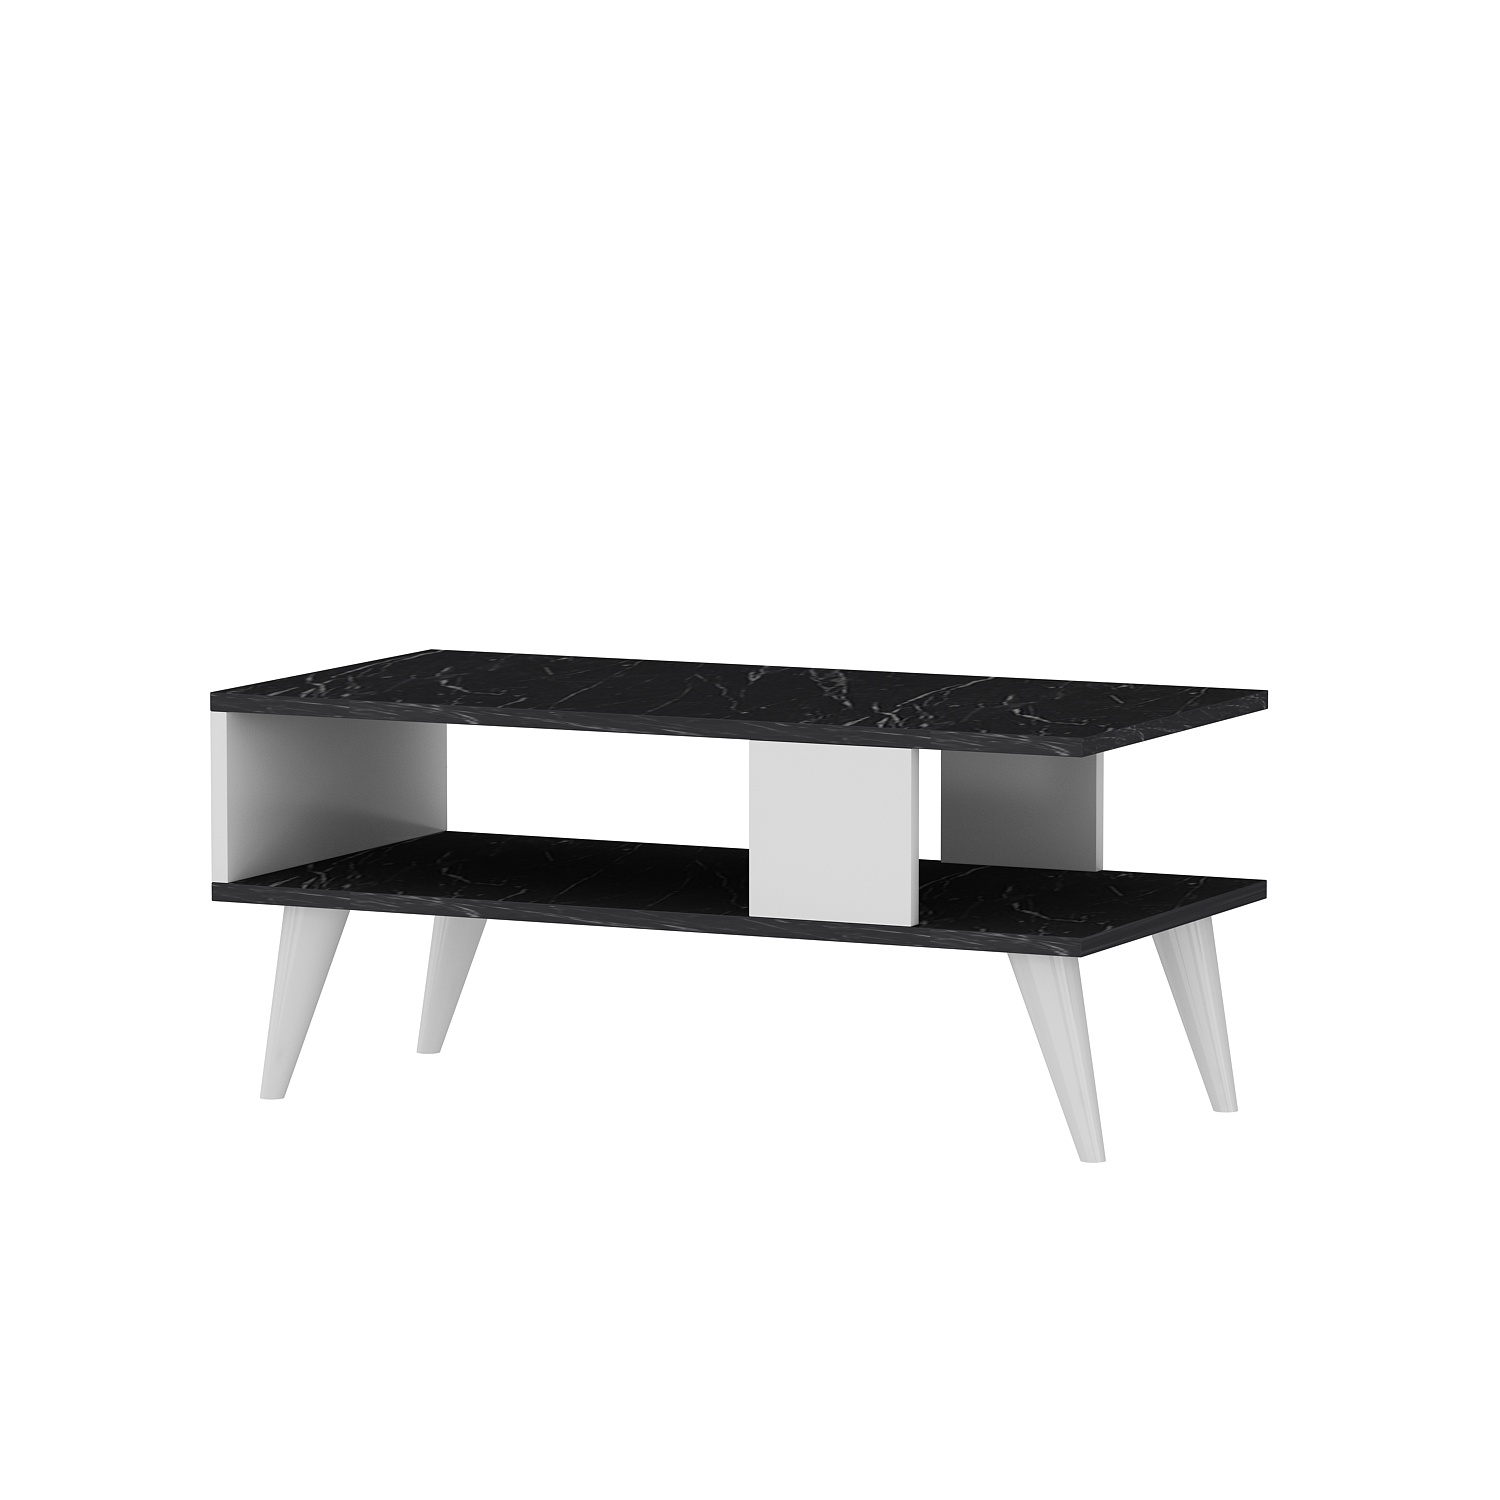 Tavolino in stile scandinavo Jatte L90xH40cm effetto marmo bianco e nero